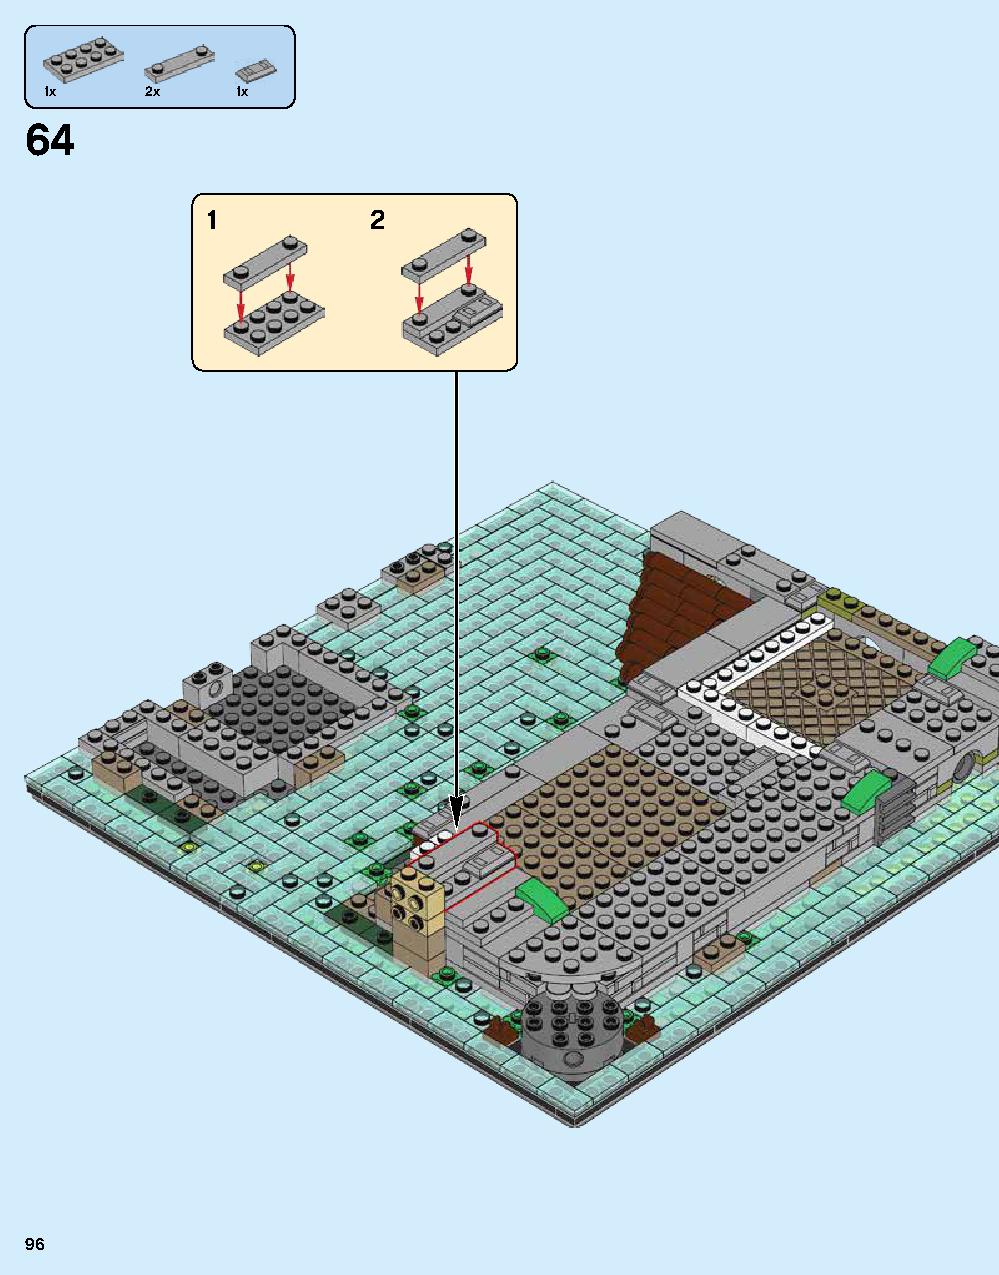 ニンジャゴー シティ 70620 レゴの商品情報 レゴの説明書・組立方法 96 page